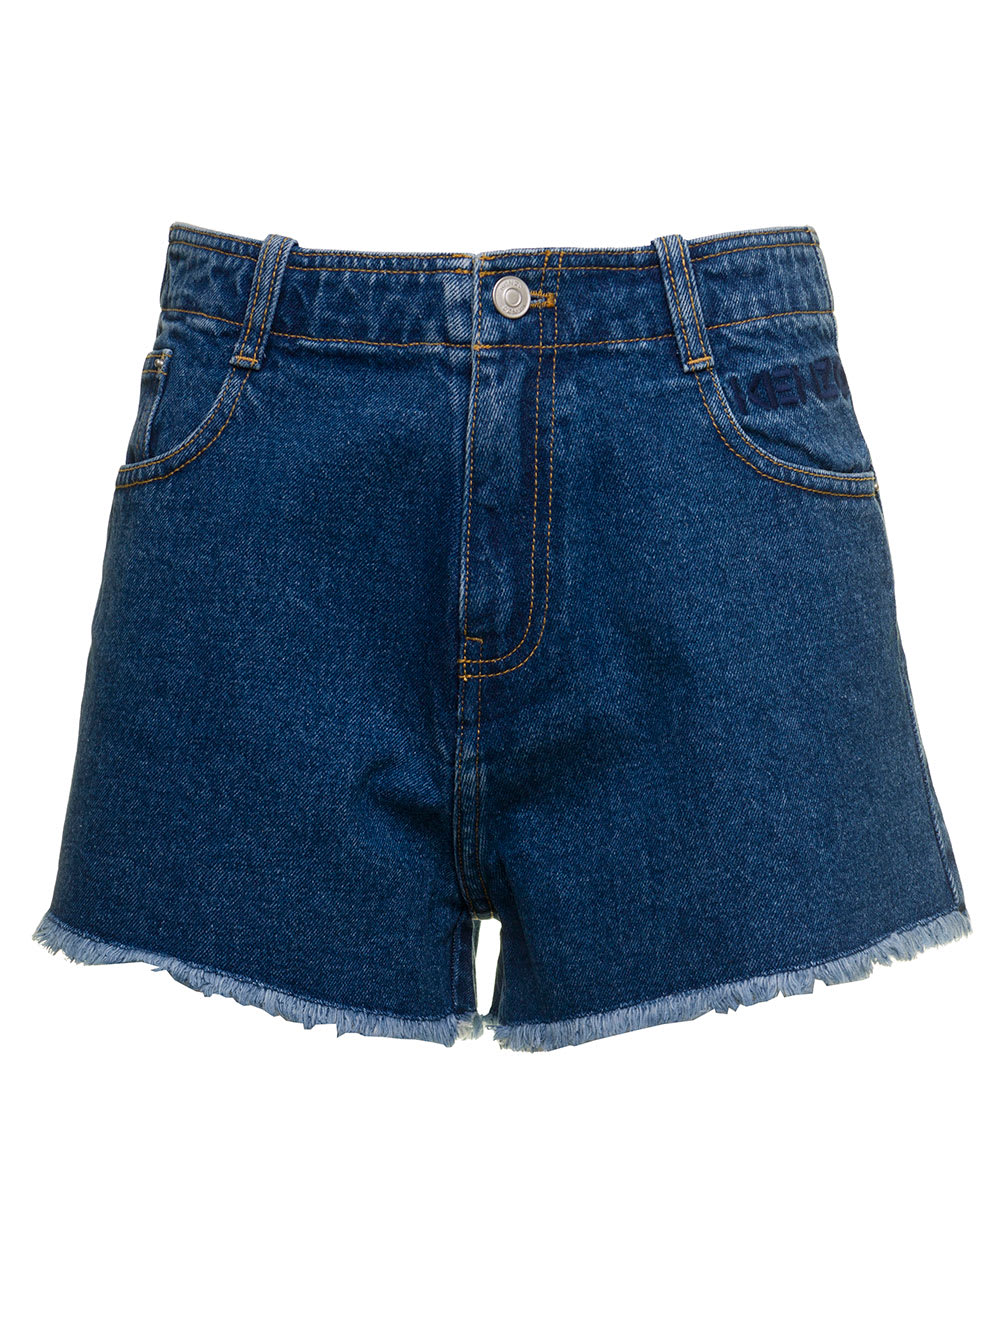 Kenzo Womans Blue Denim Shorts With Fringed Bottom